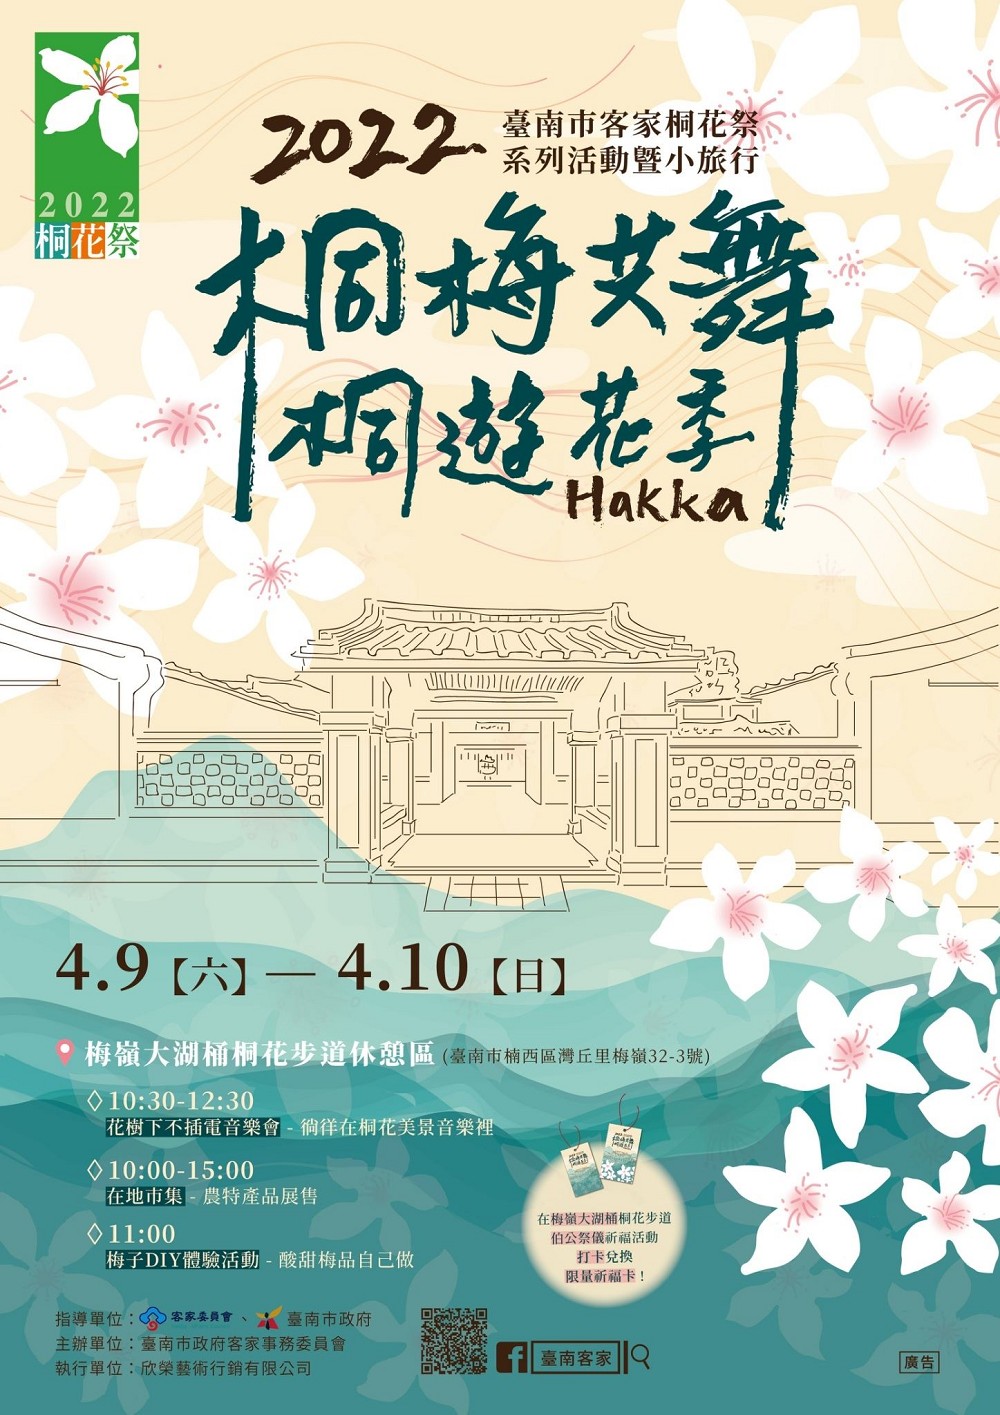 4月9~10日於梅嶺大湖桶桐花步道休憩區並舉辦「2022 臺南市客家桐花祭」